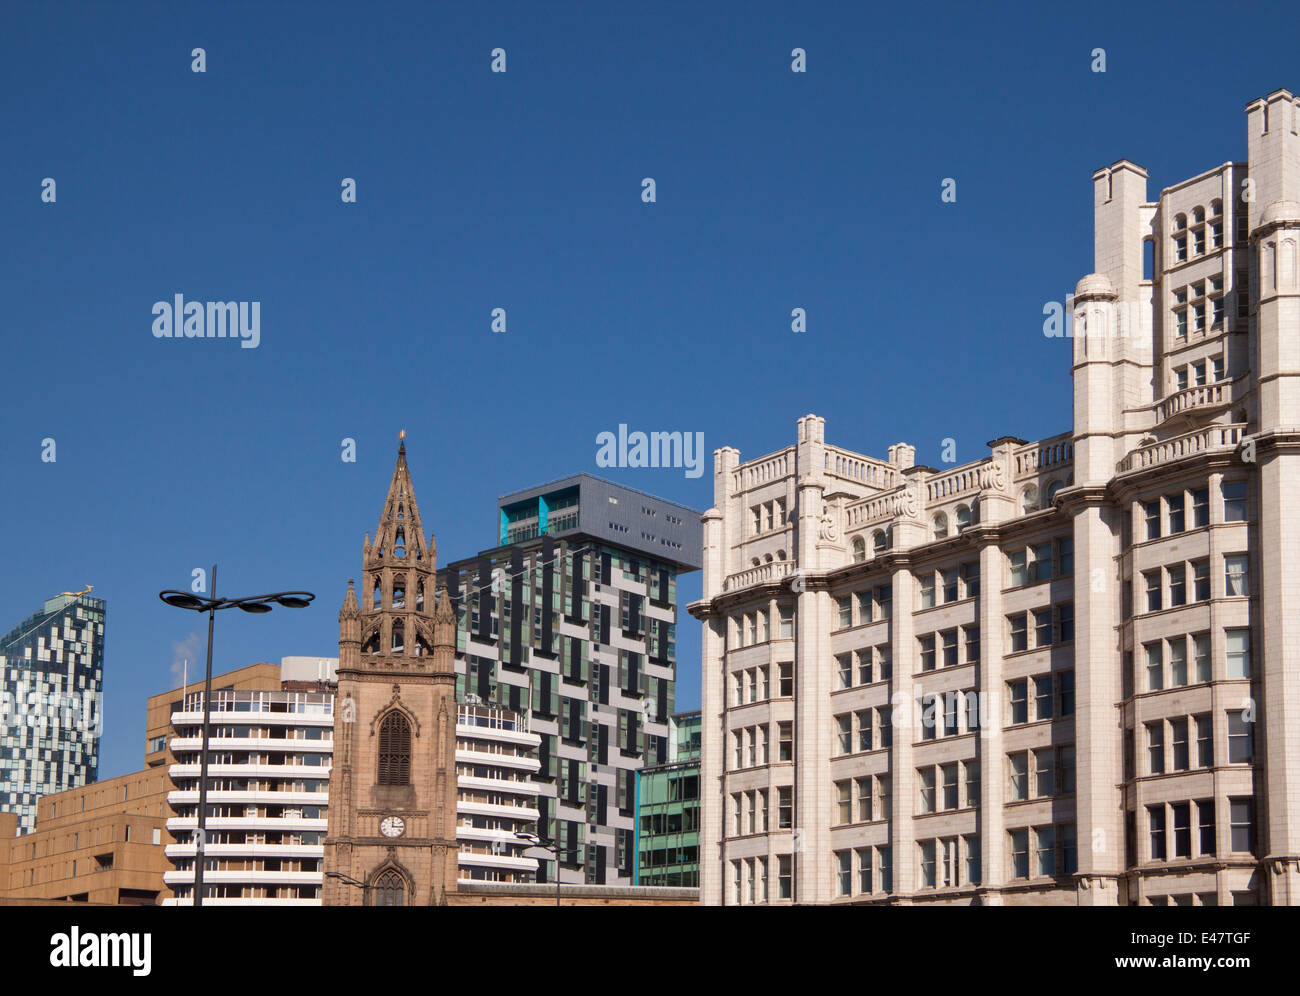 Skyline Liverpool shot, montrant les différents styles d'architecture dans une très petite zone contre un ciel bleu. Banque D'Images